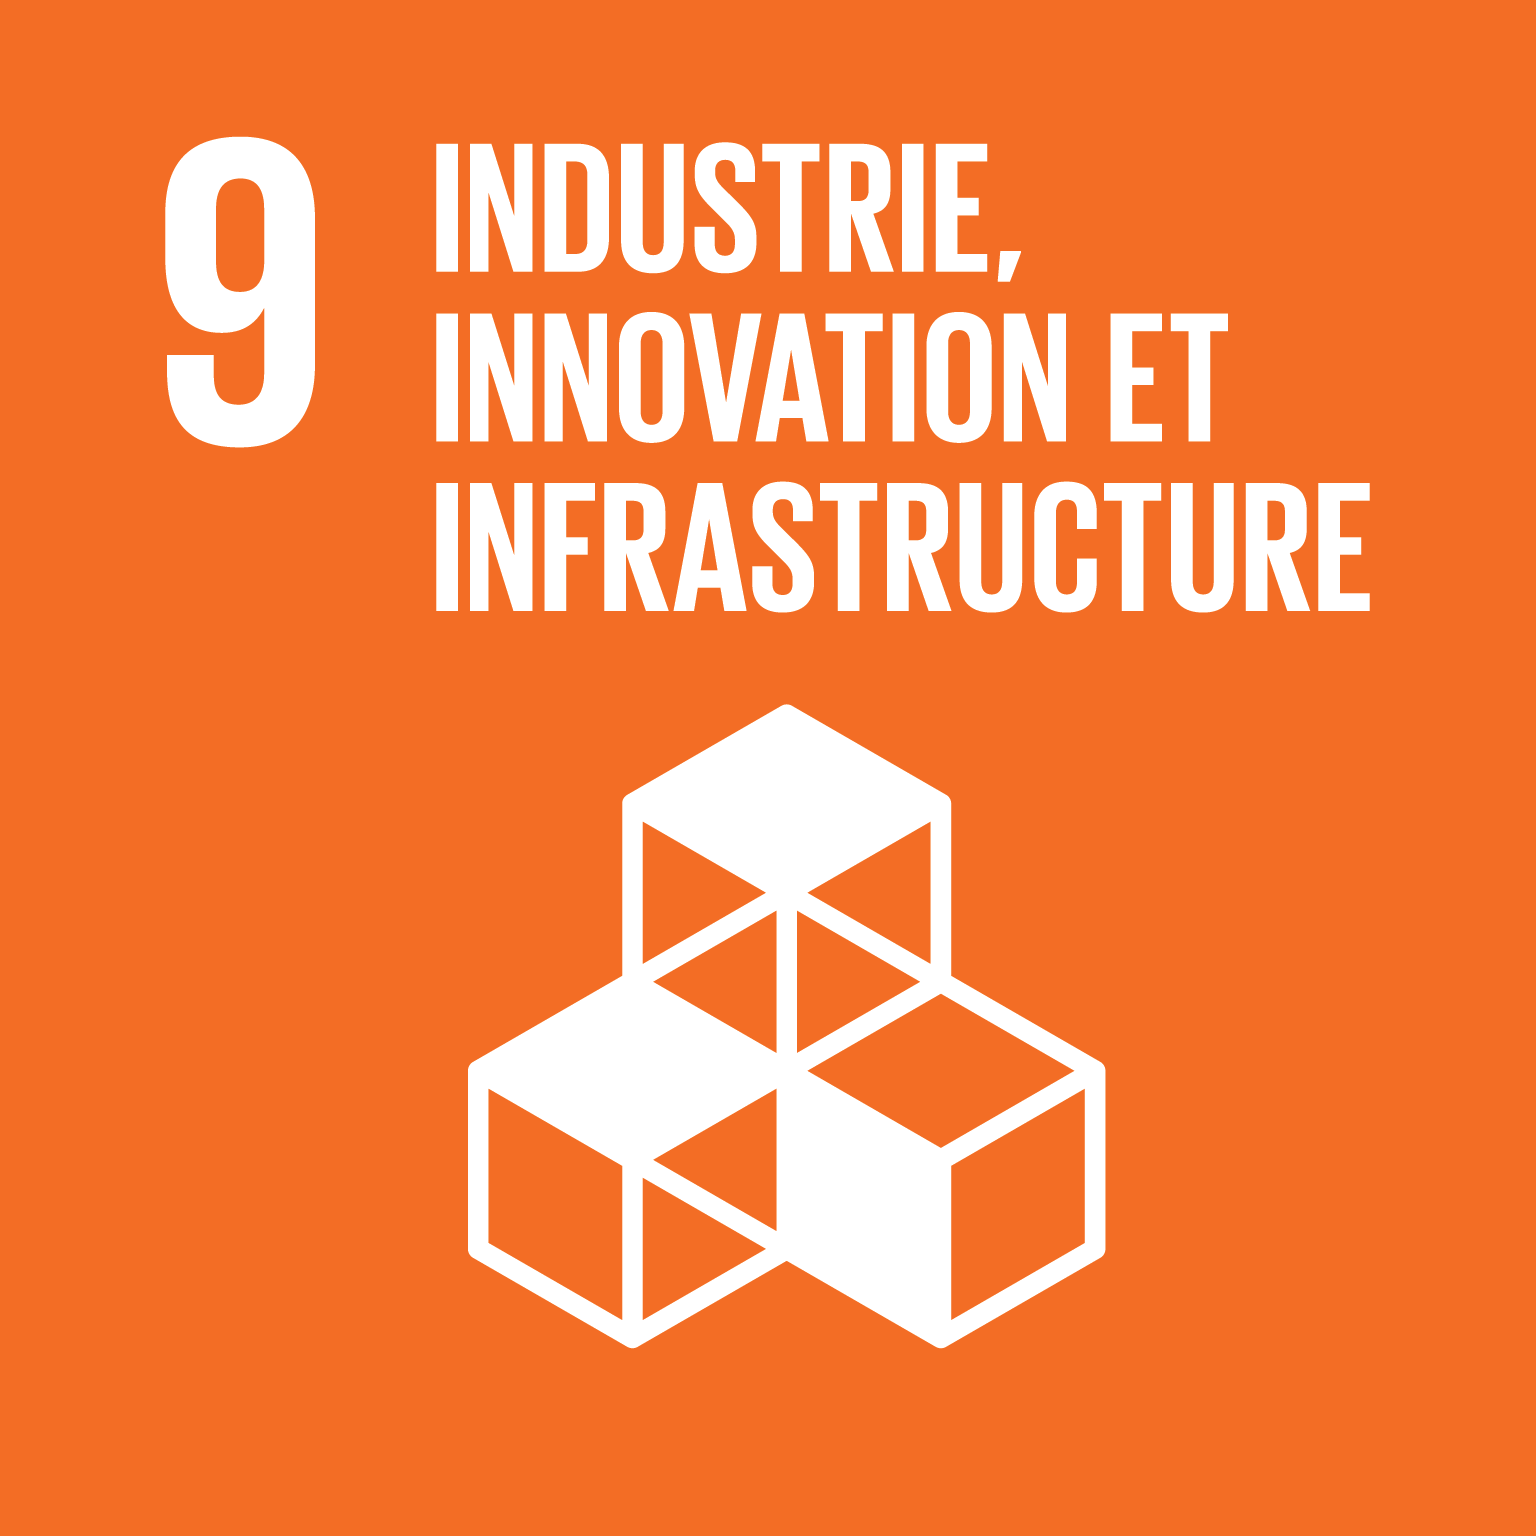 Bâtir une infrastructure résiliente, promouvoir une industrialisation durable qui profite à tous et encourager l’innovation